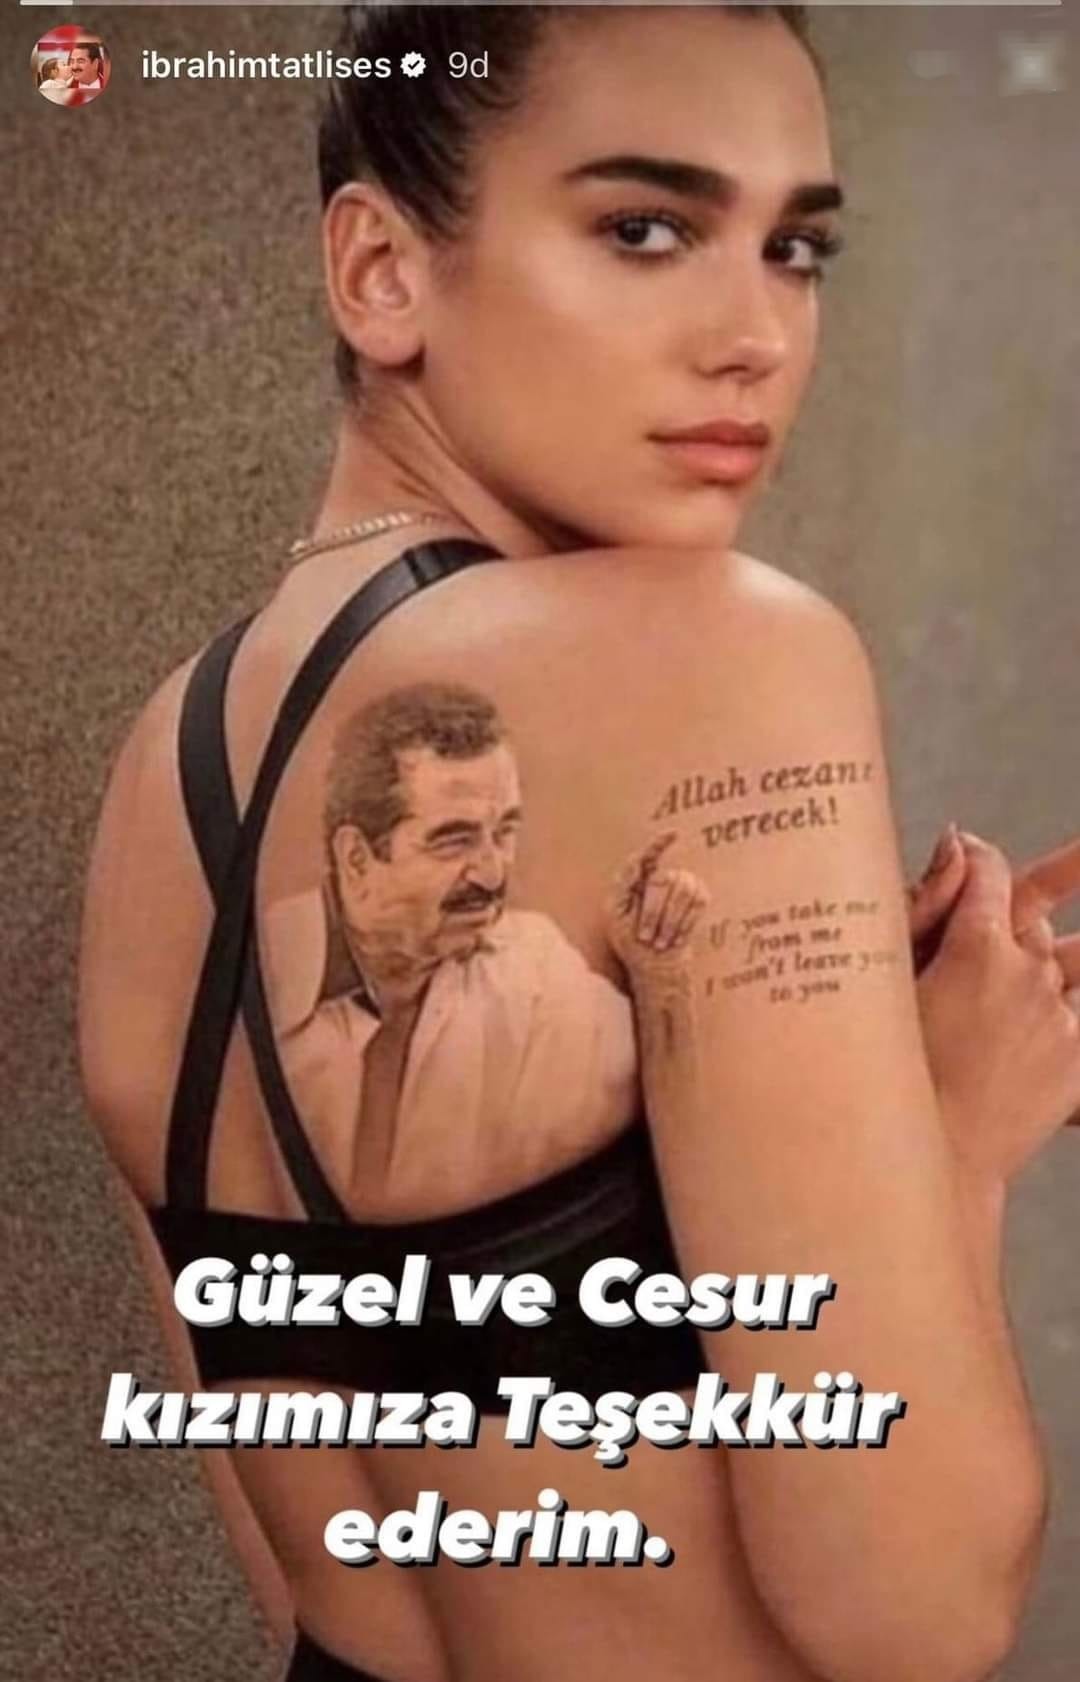 Fotoşoplu şəkli həqiqi bilib təşəkkür yazdı